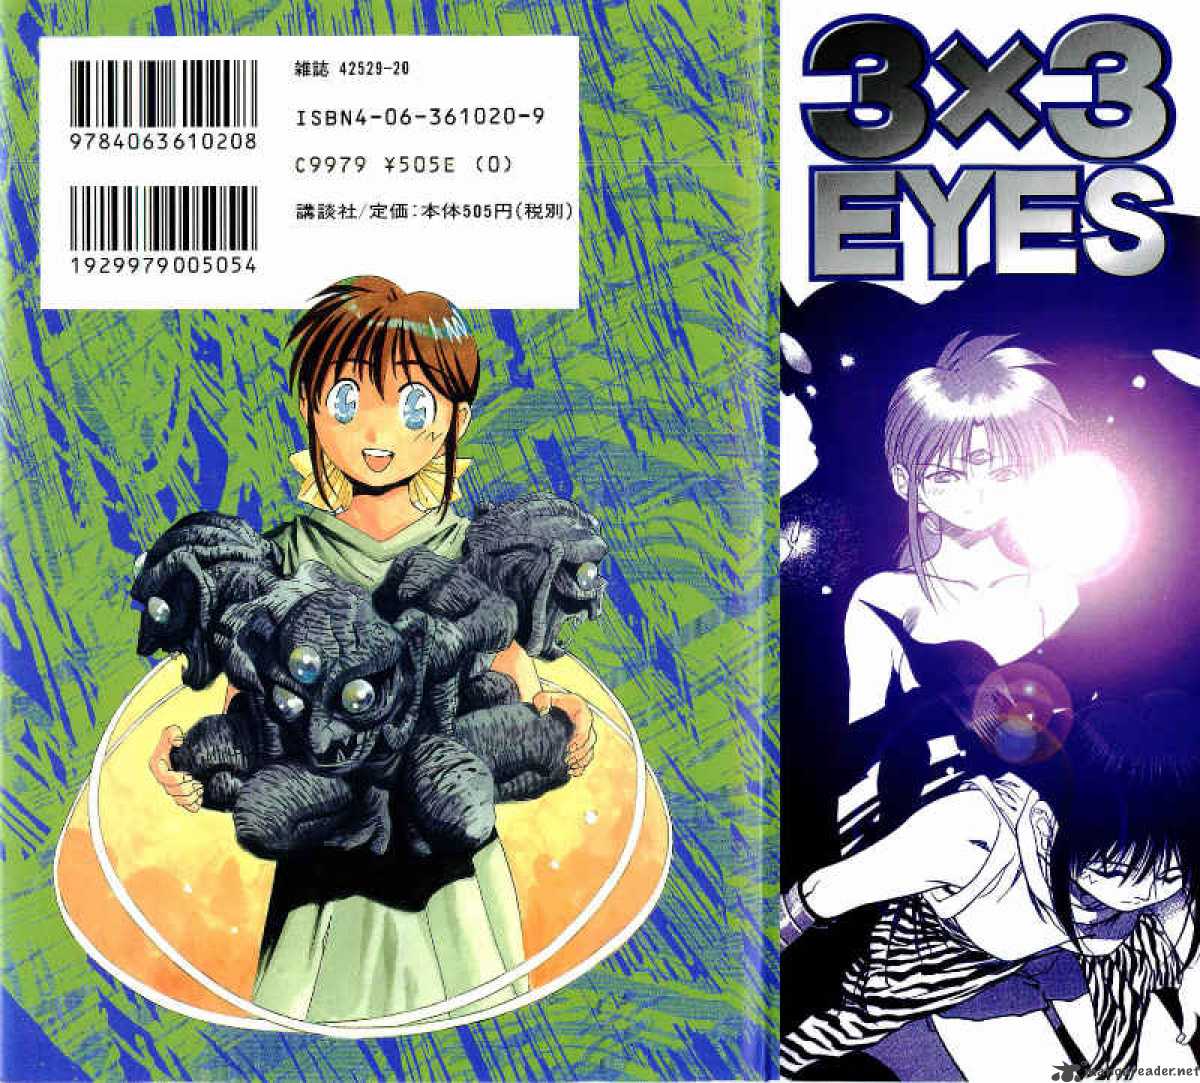 3x3 Eyes 538 2